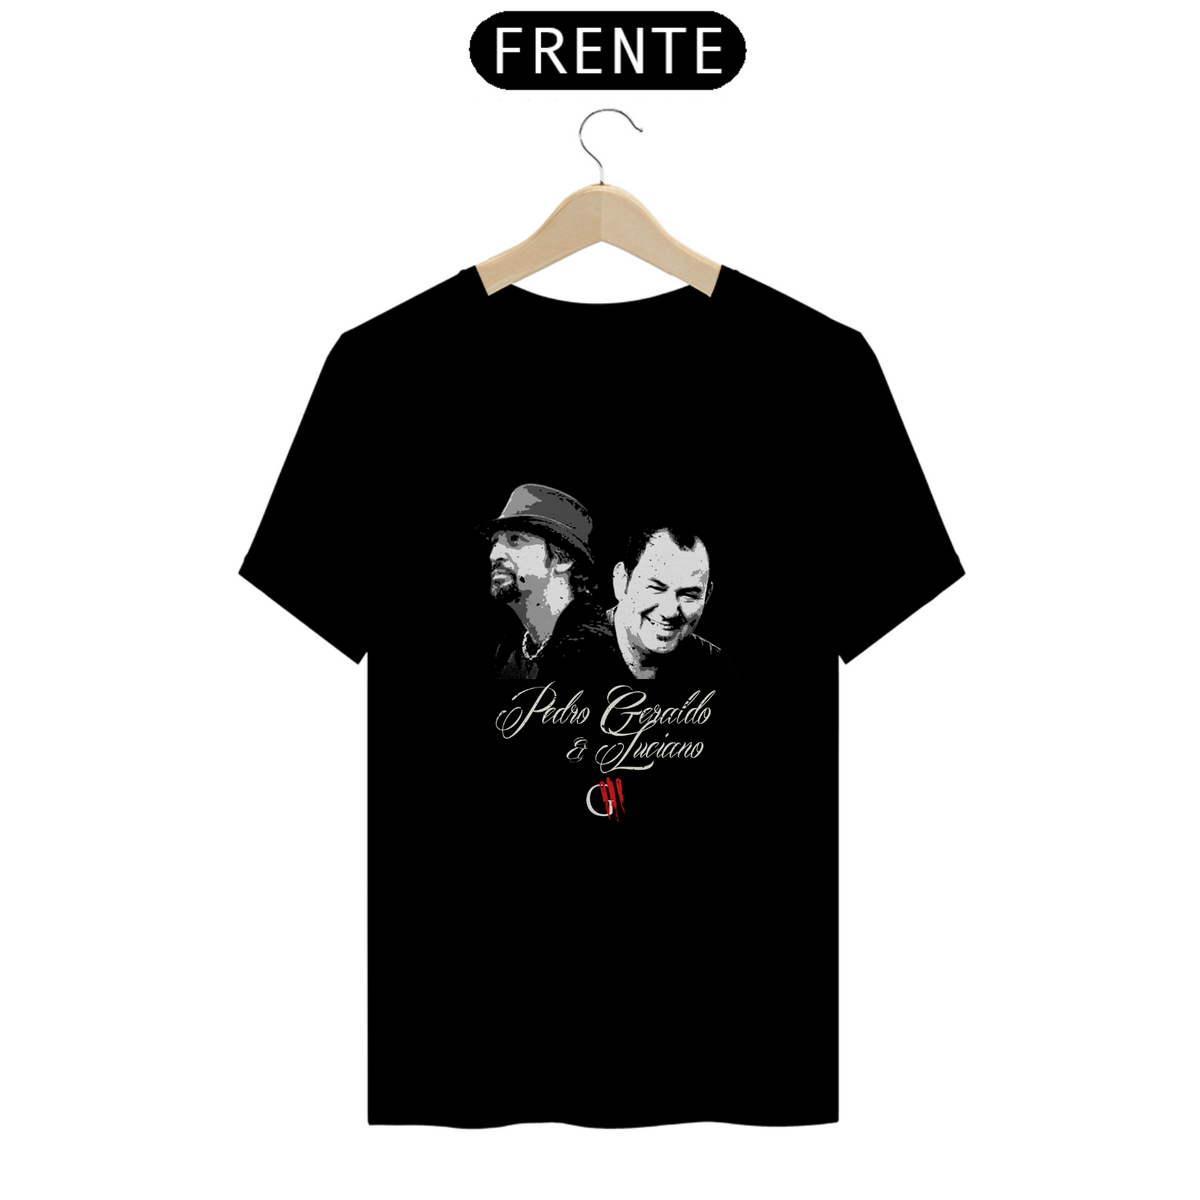 Nome do produto: Camiseta Pedro Geraldo e Luciano